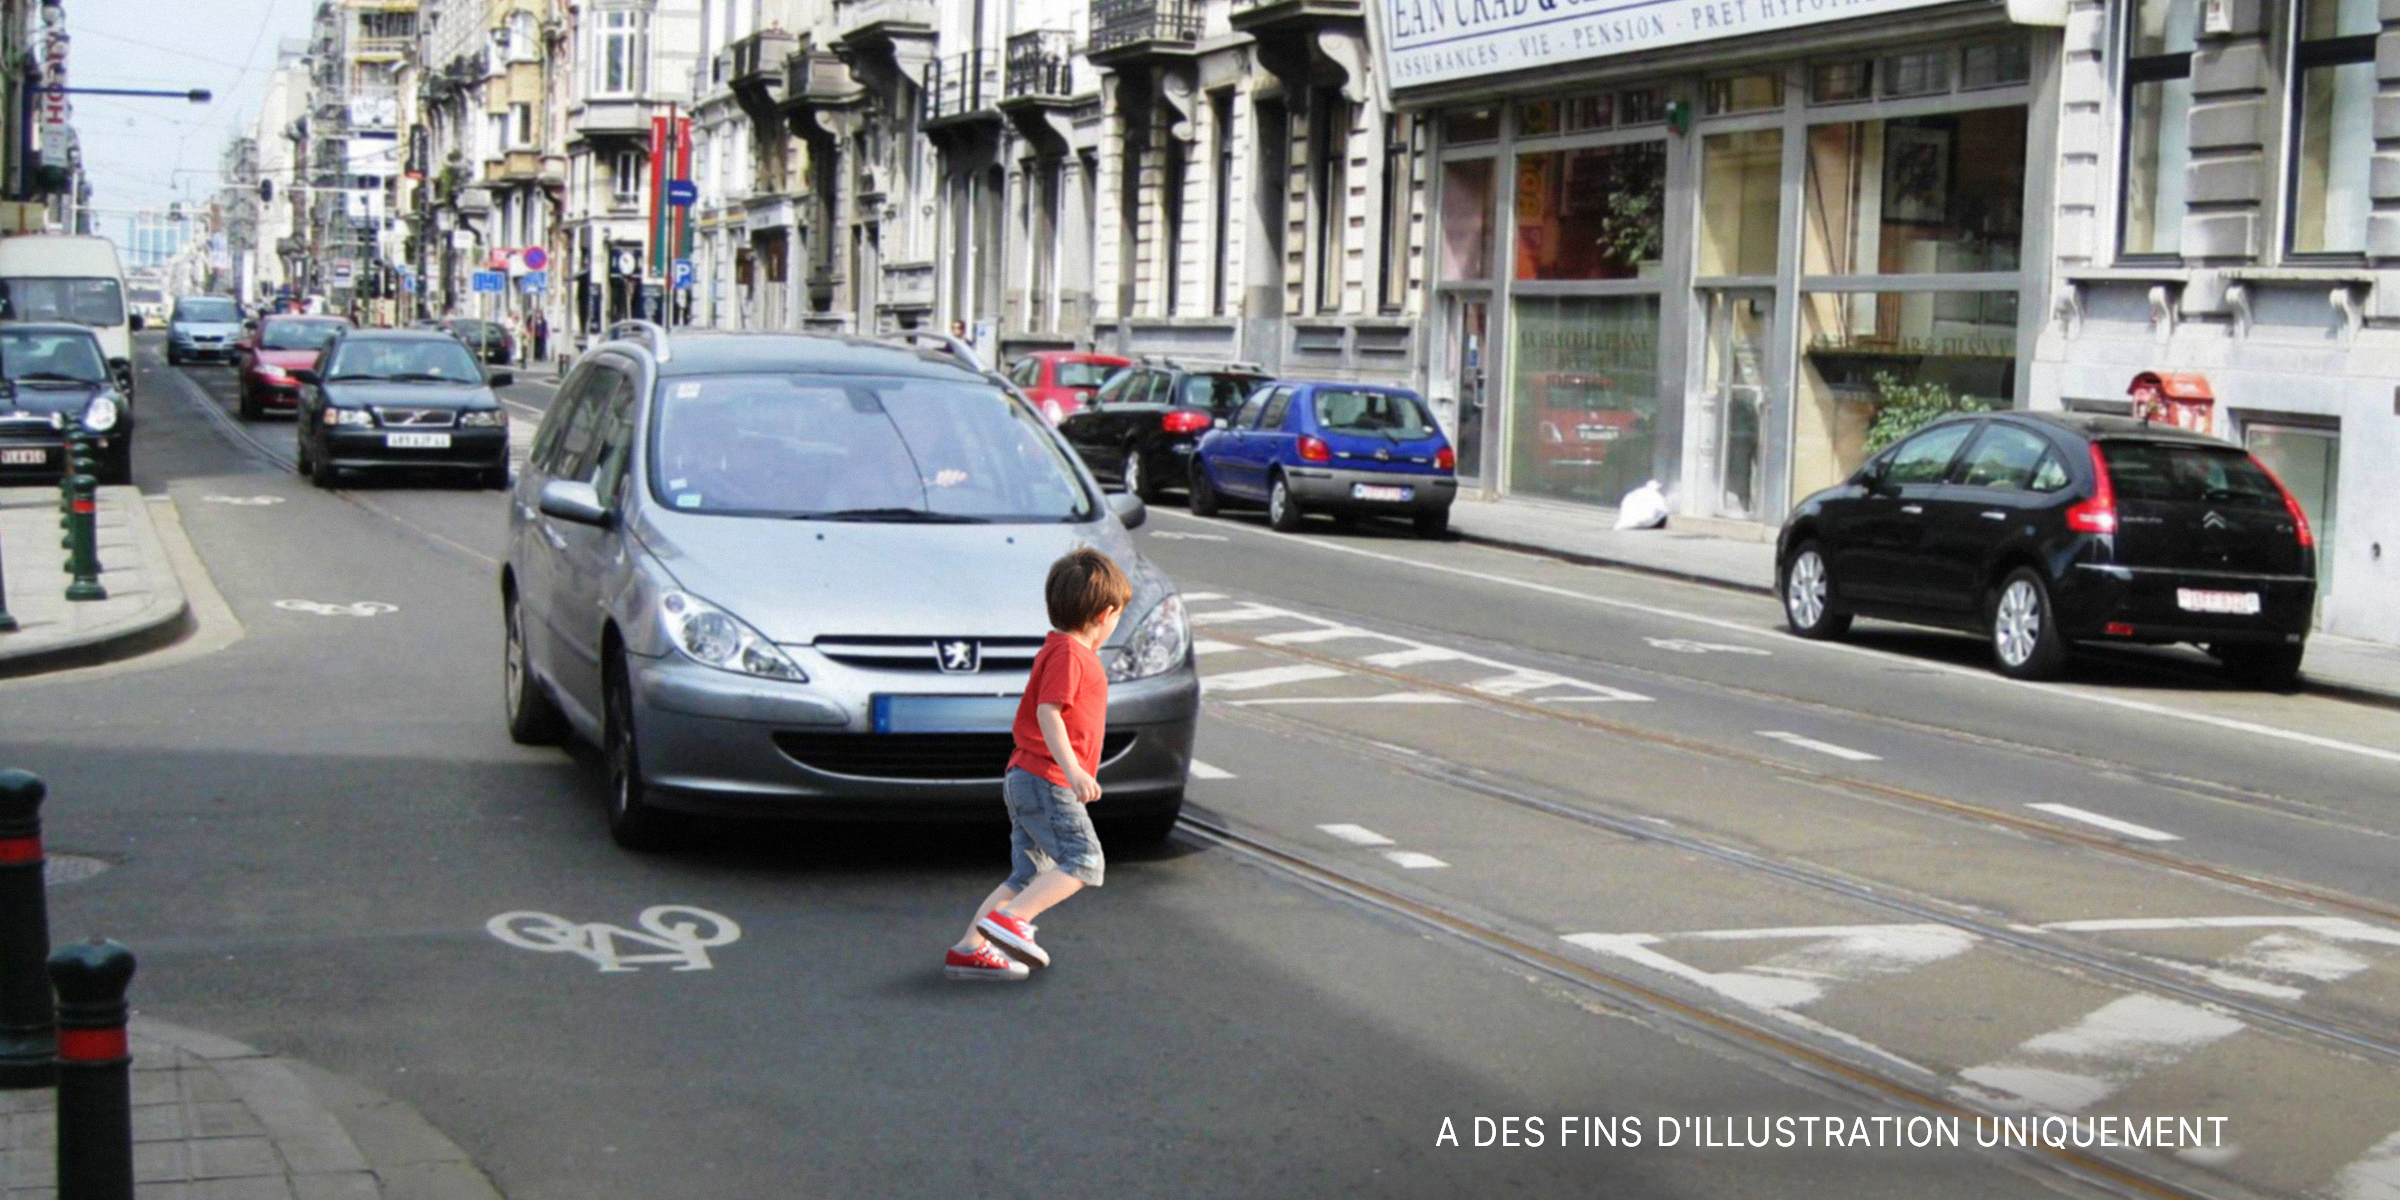 Un jeune garçon devant une voiture sur la route | Source : Shutterstock, Flickr / andynash (CC BY-SA 2.0)